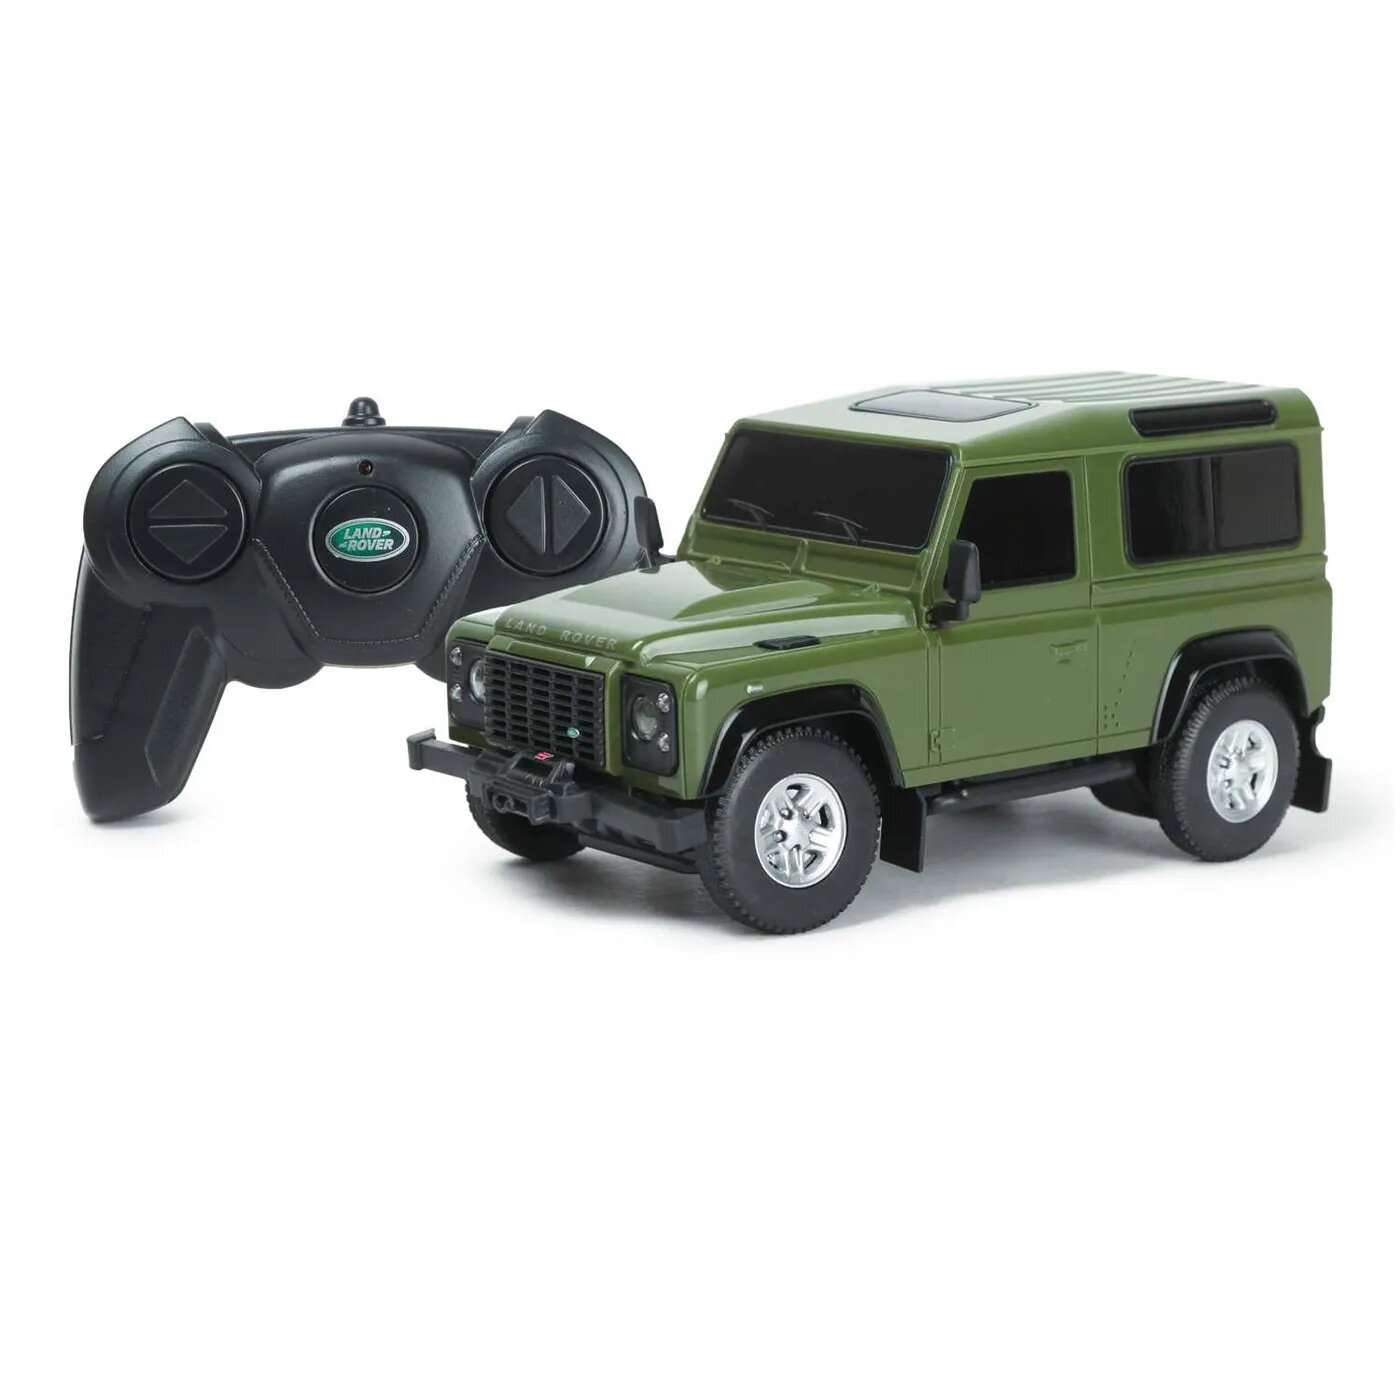 Машина Rastar РУ 1:24 Land Rover Defender Зеленая 78500